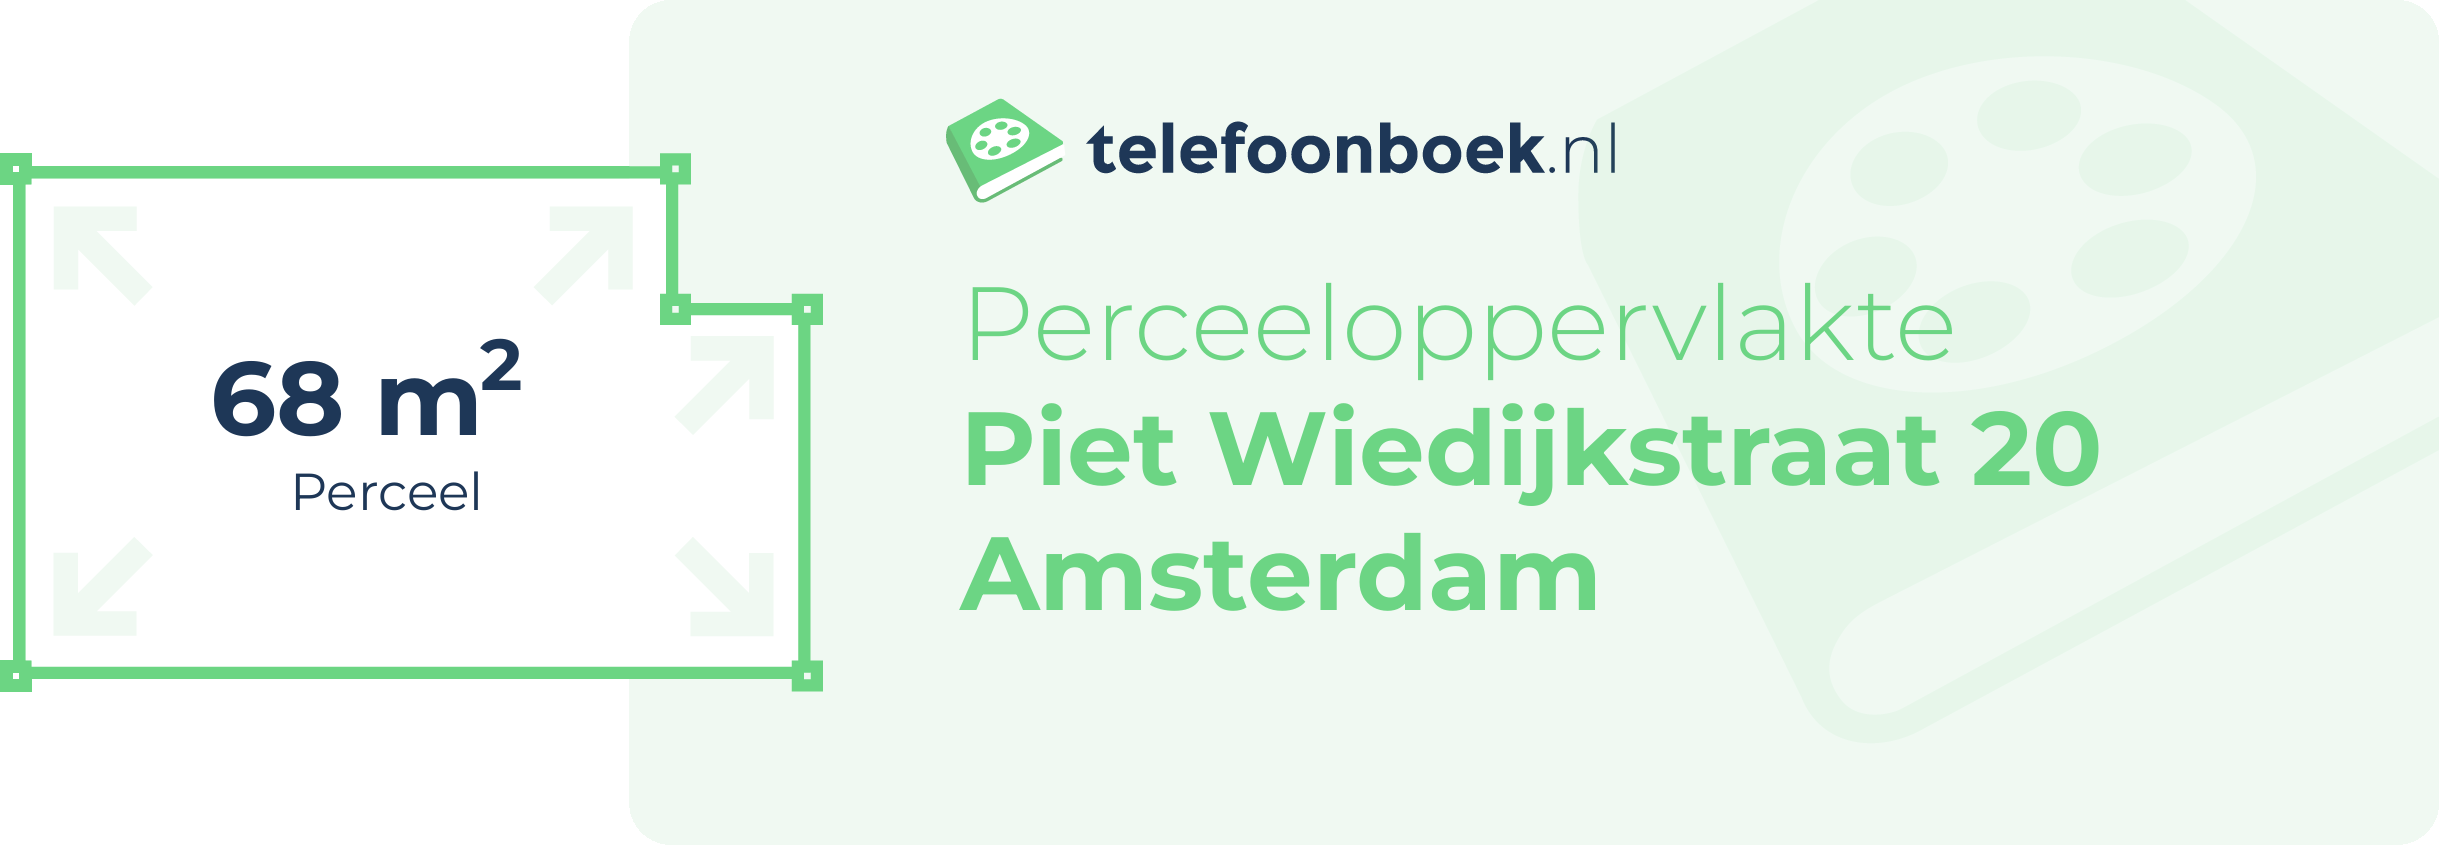 Perceeloppervlakte Piet Wiedijkstraat 20 Amsterdam